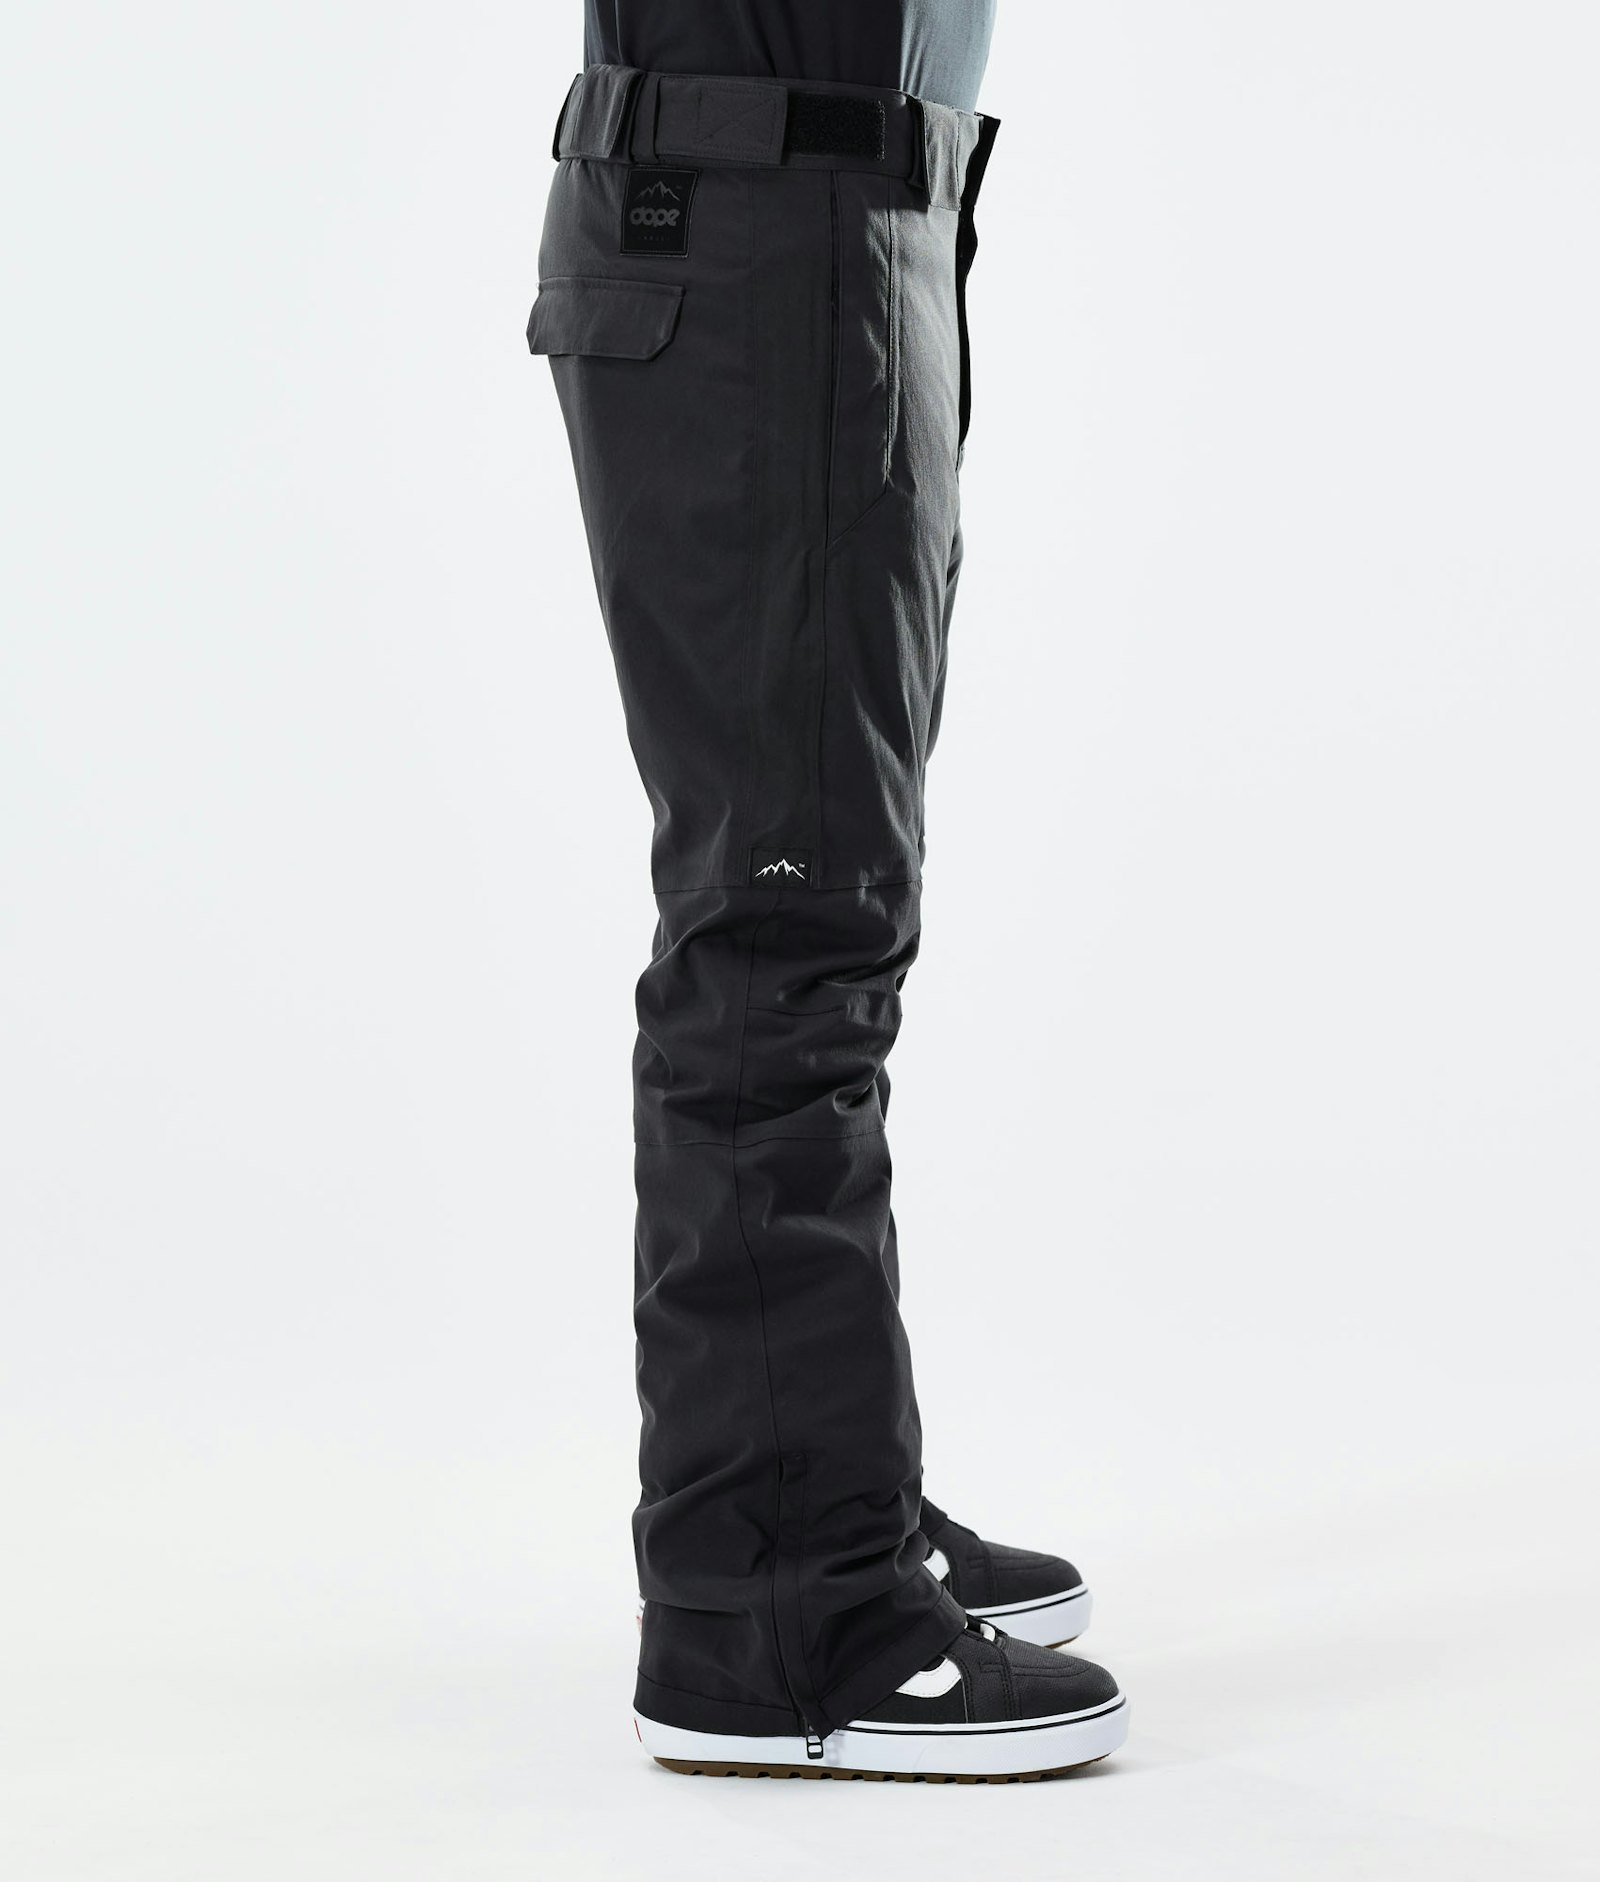 Hoax II Pantalones Snowboard Hombre Black